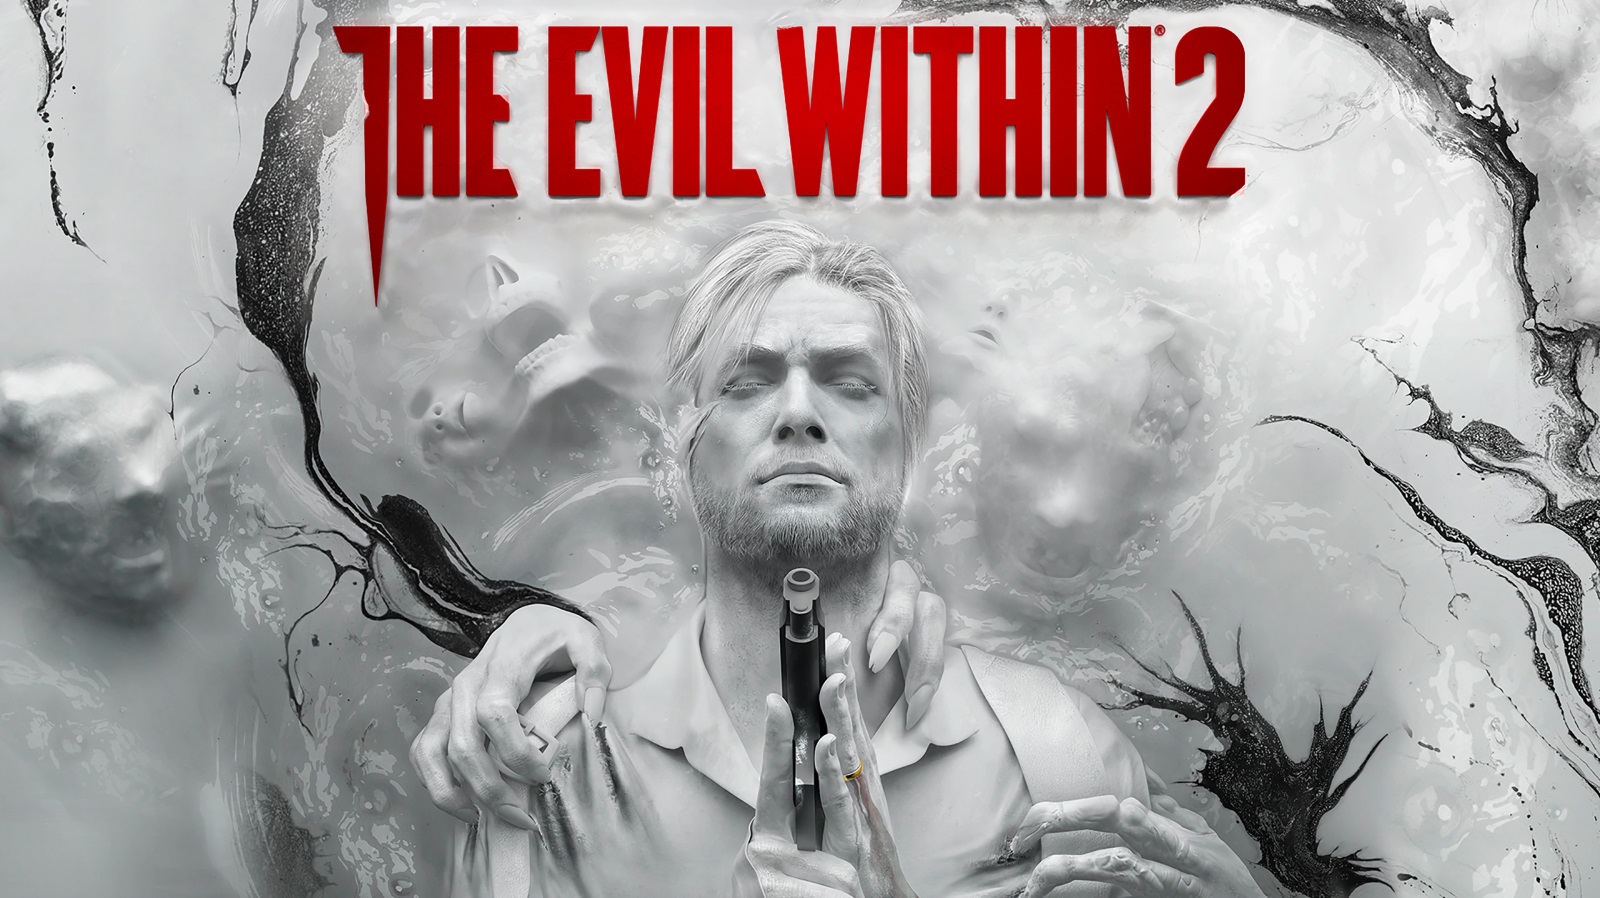 The Evil Within 2 e Tandem estão grátis na Epic Games Store